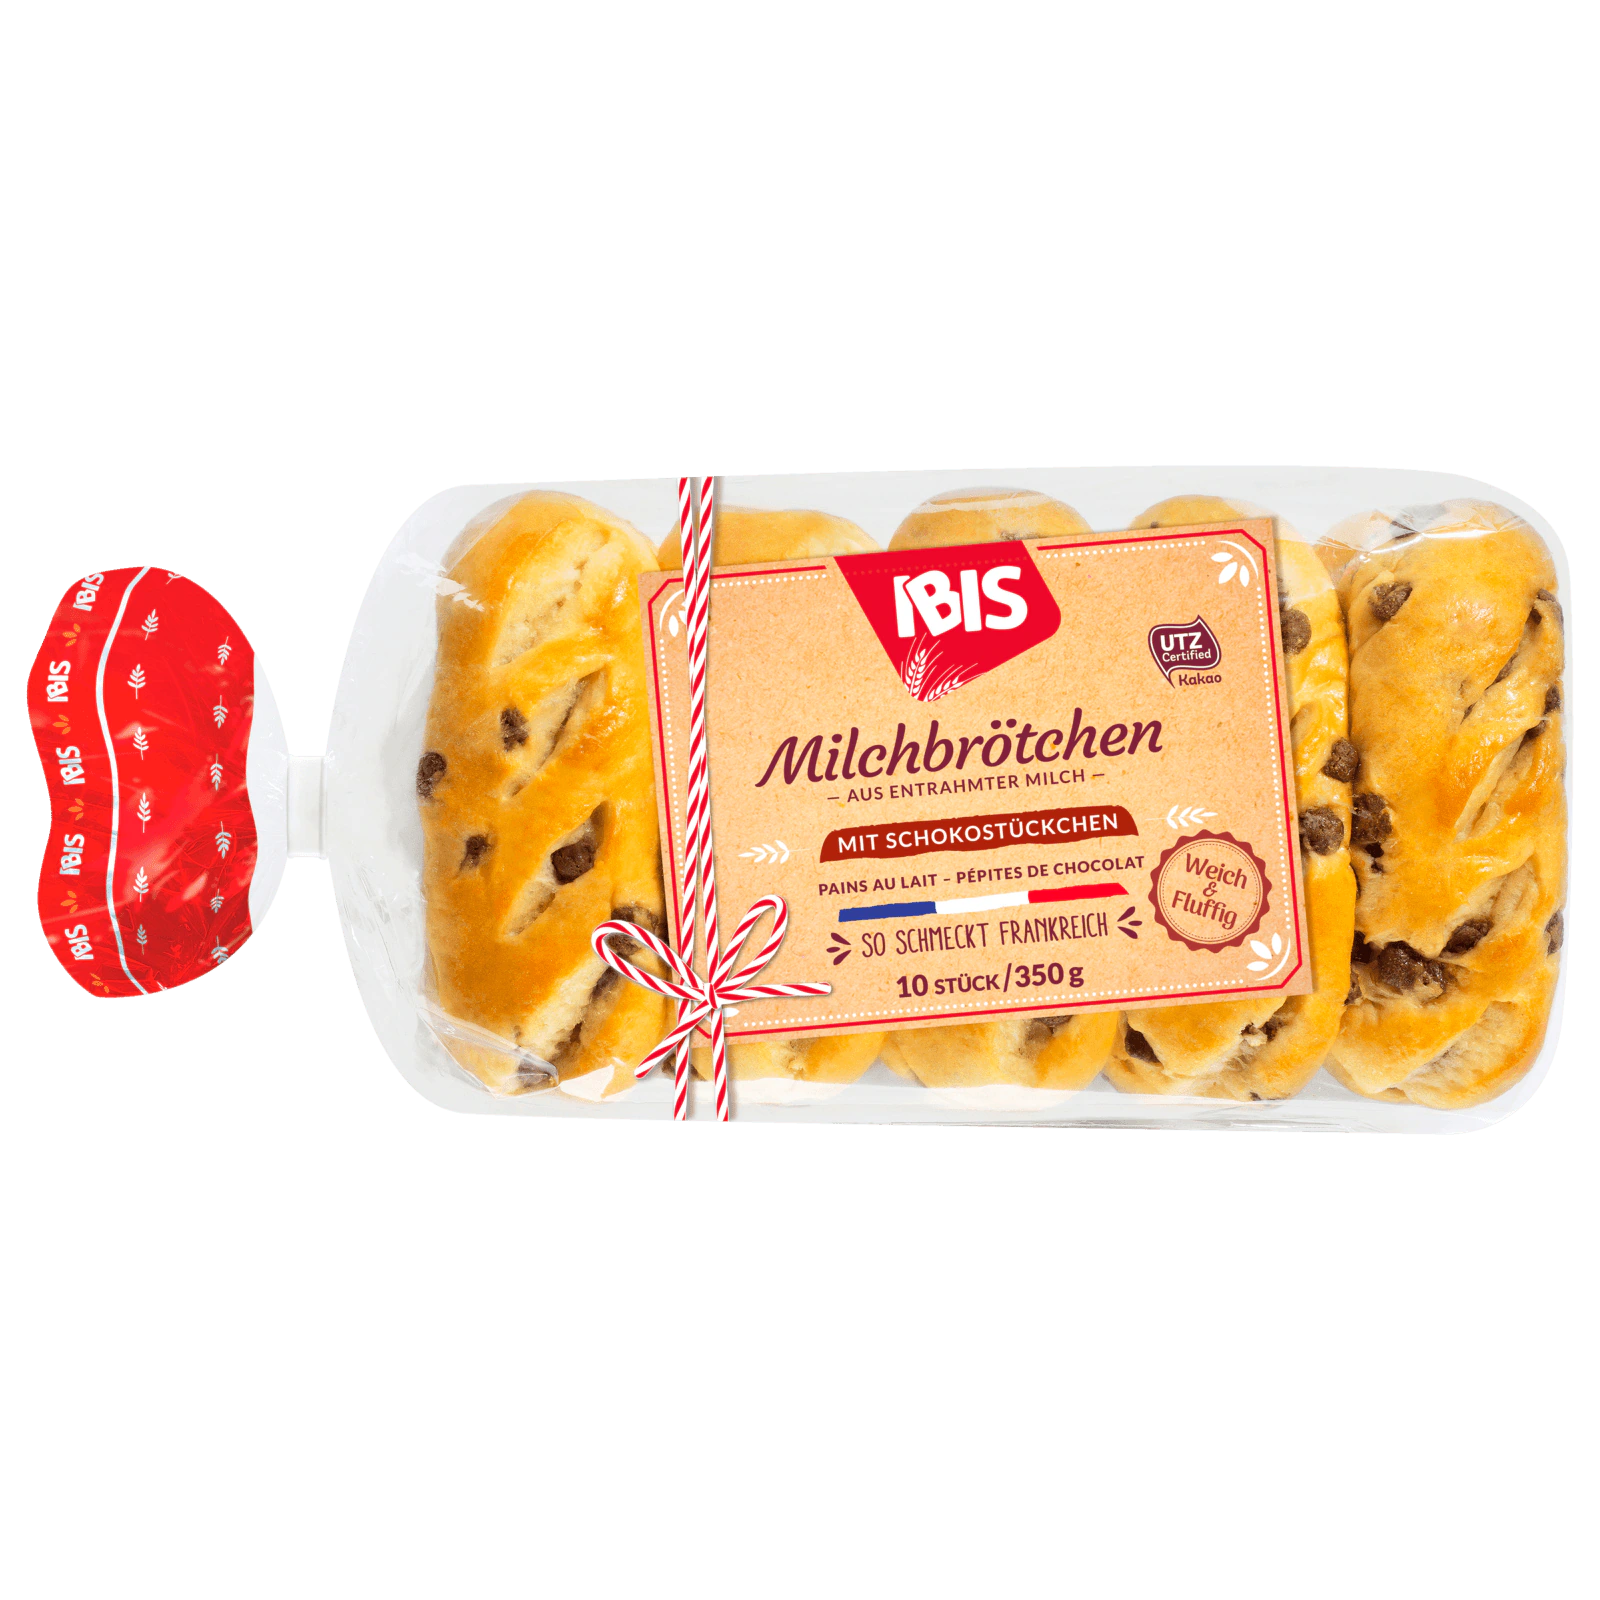 Ibis Milchbrötchen mit Schokostücken 350g  für 2.49 EUR